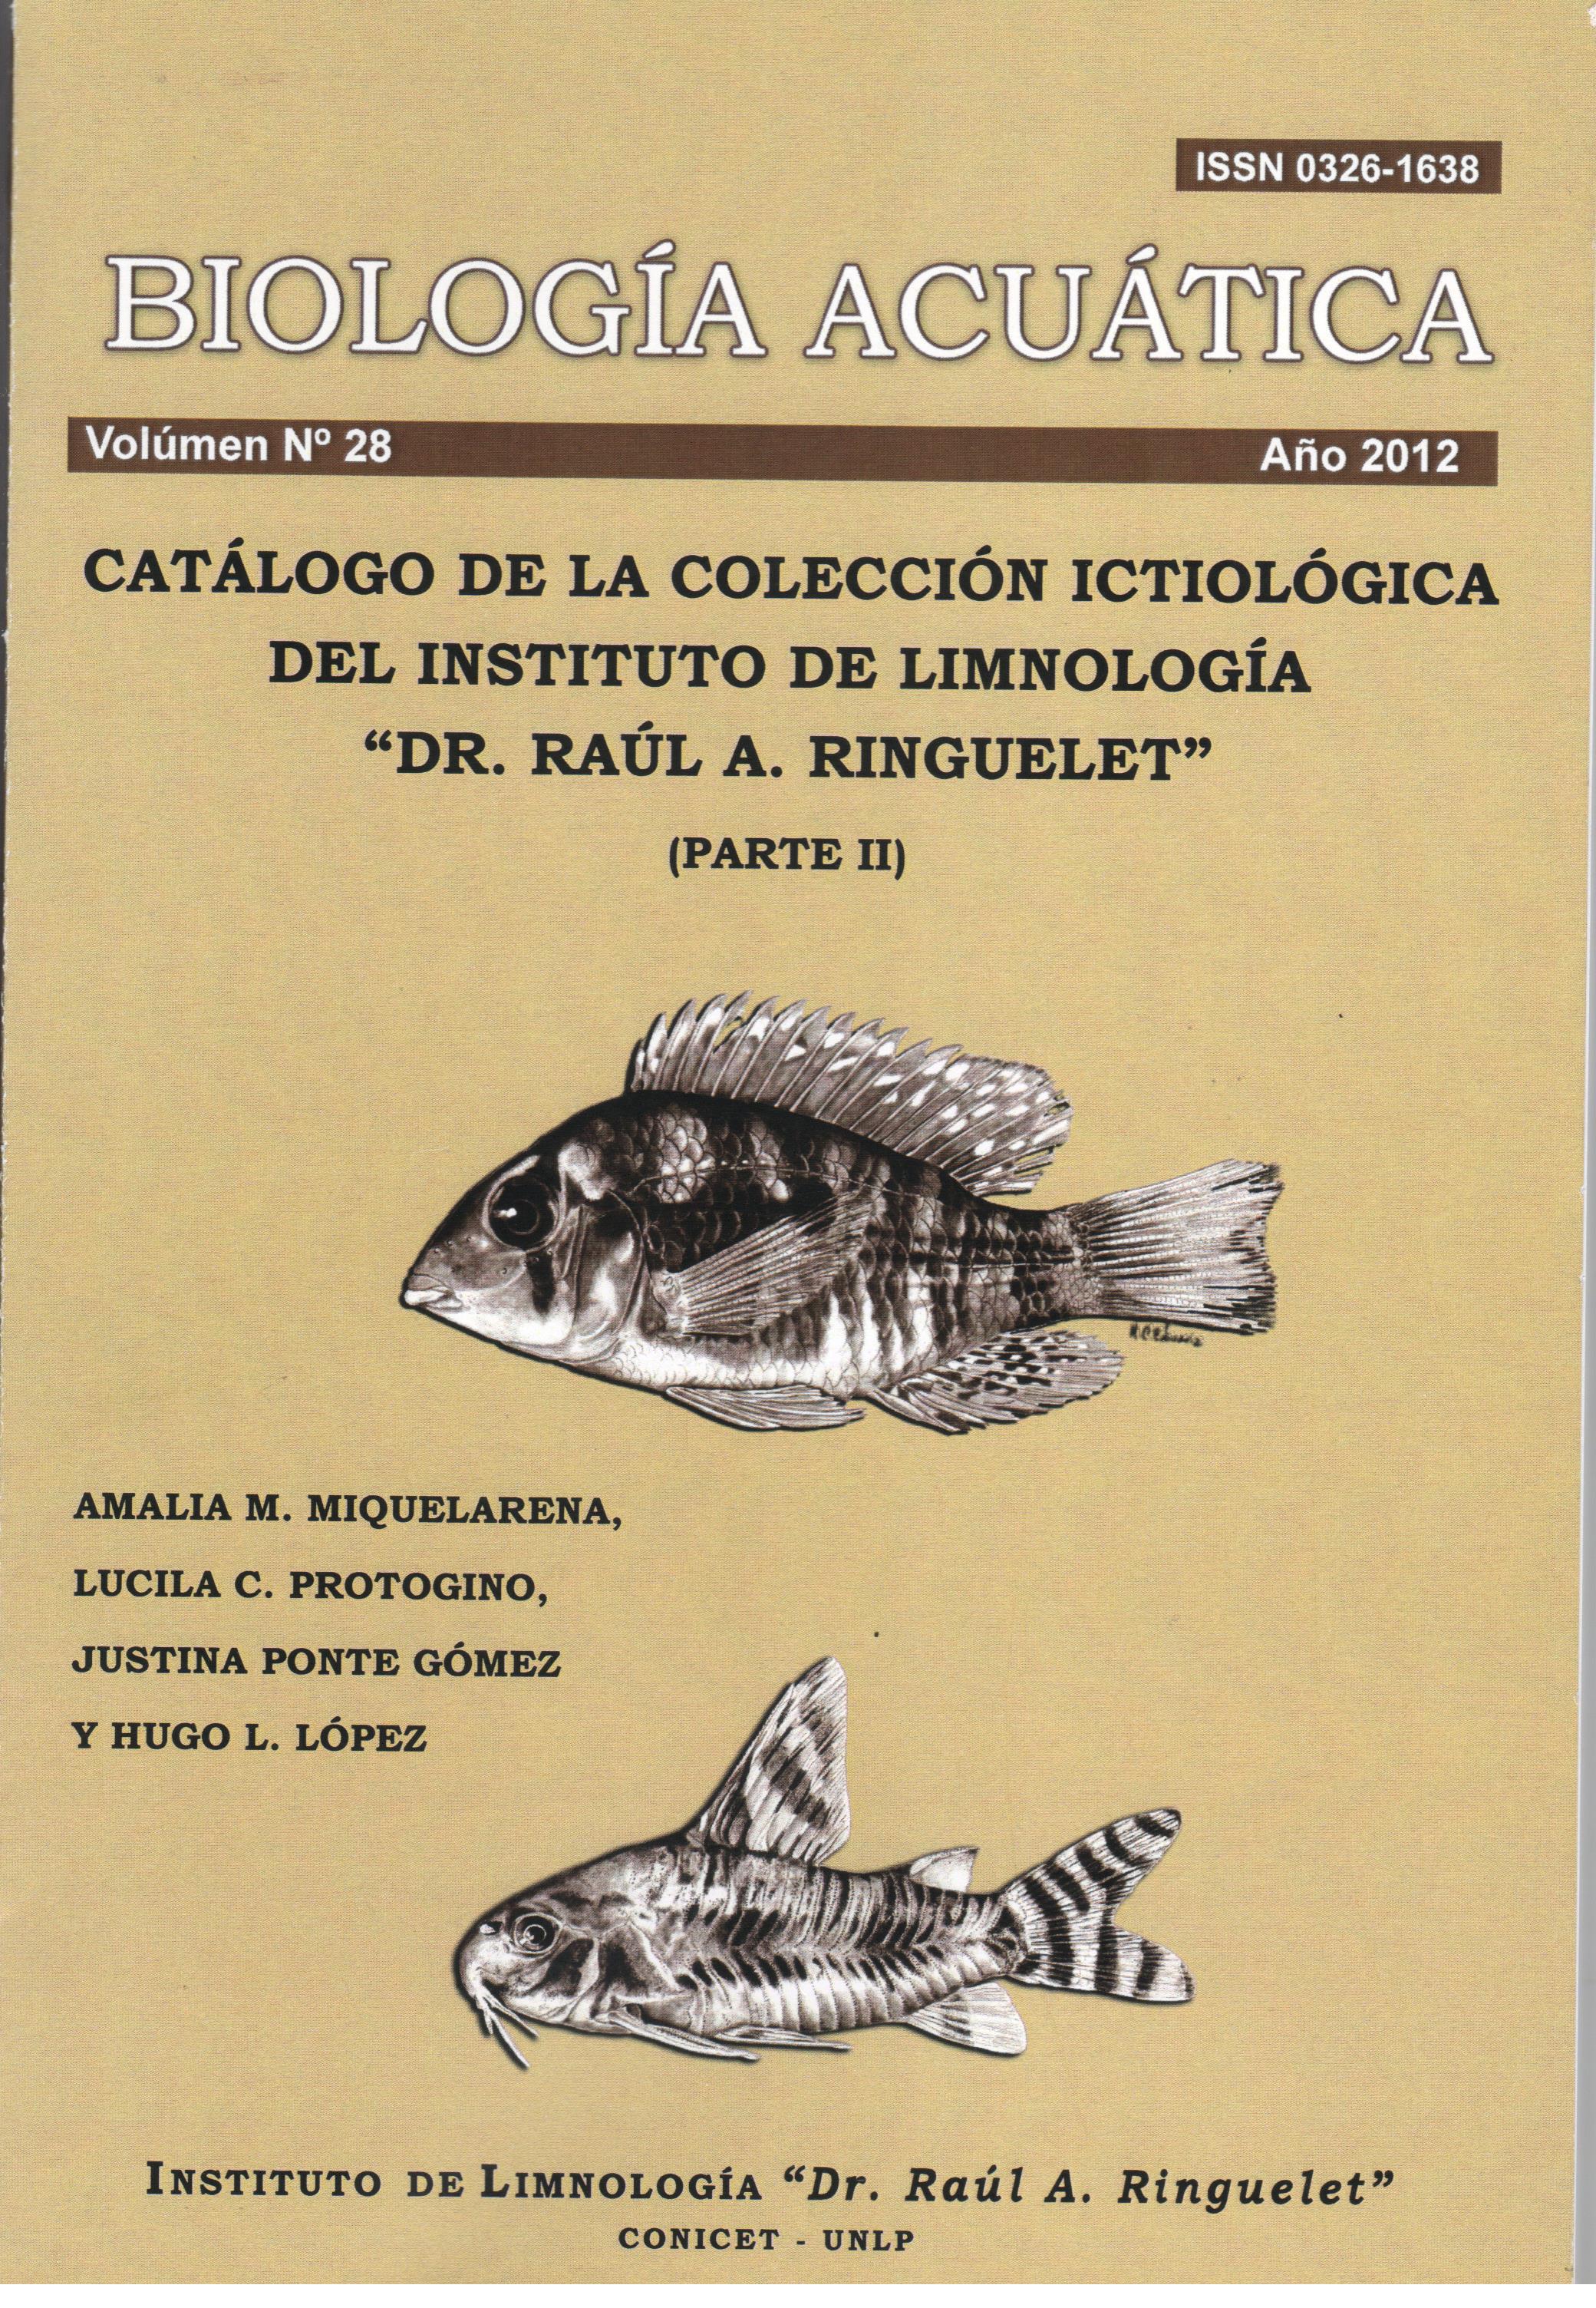 					Ver Núm. 28 (2012): Catálogo de la colección ictiológica del Instituto de Limnología "Dr. Raúl A. Ringuelet" (parte II)
				